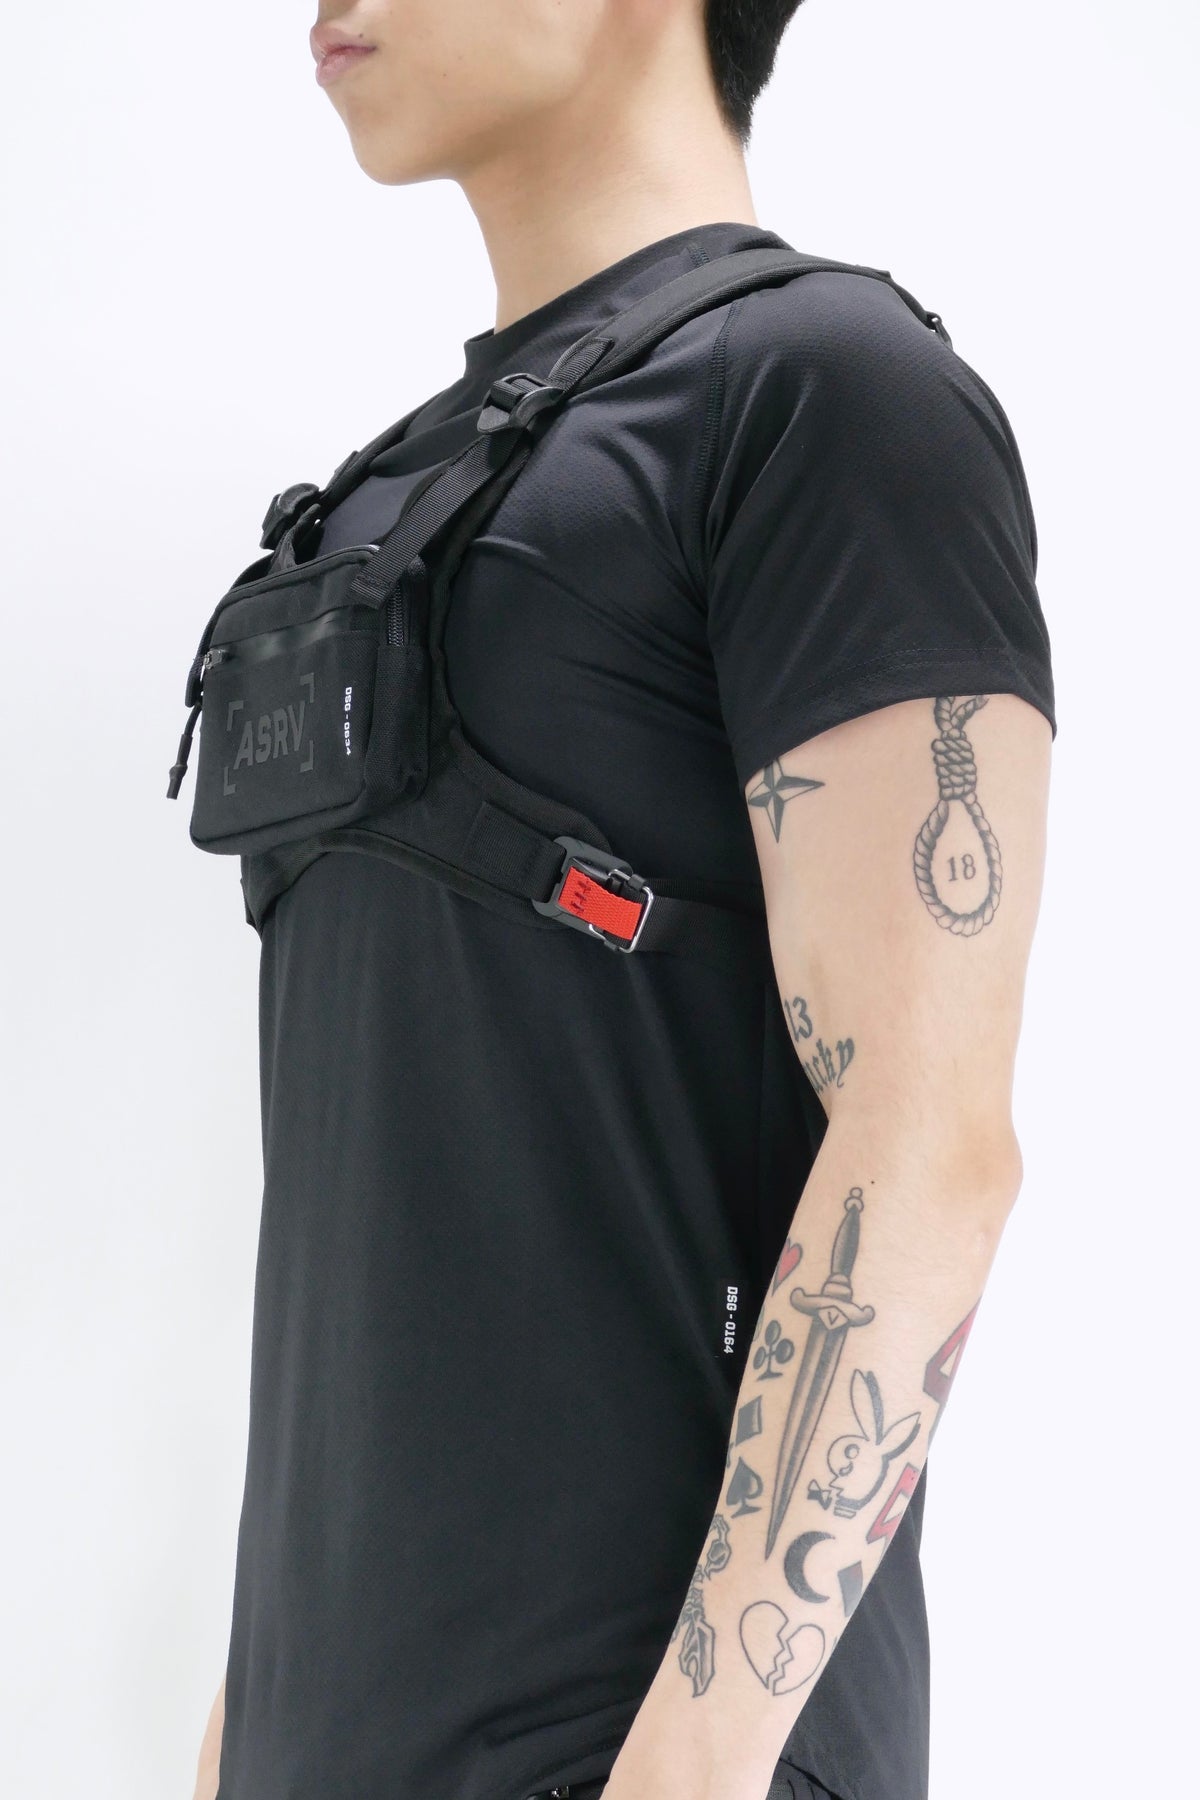 ASRV Waterproof Cordura® Chest Bag - Black